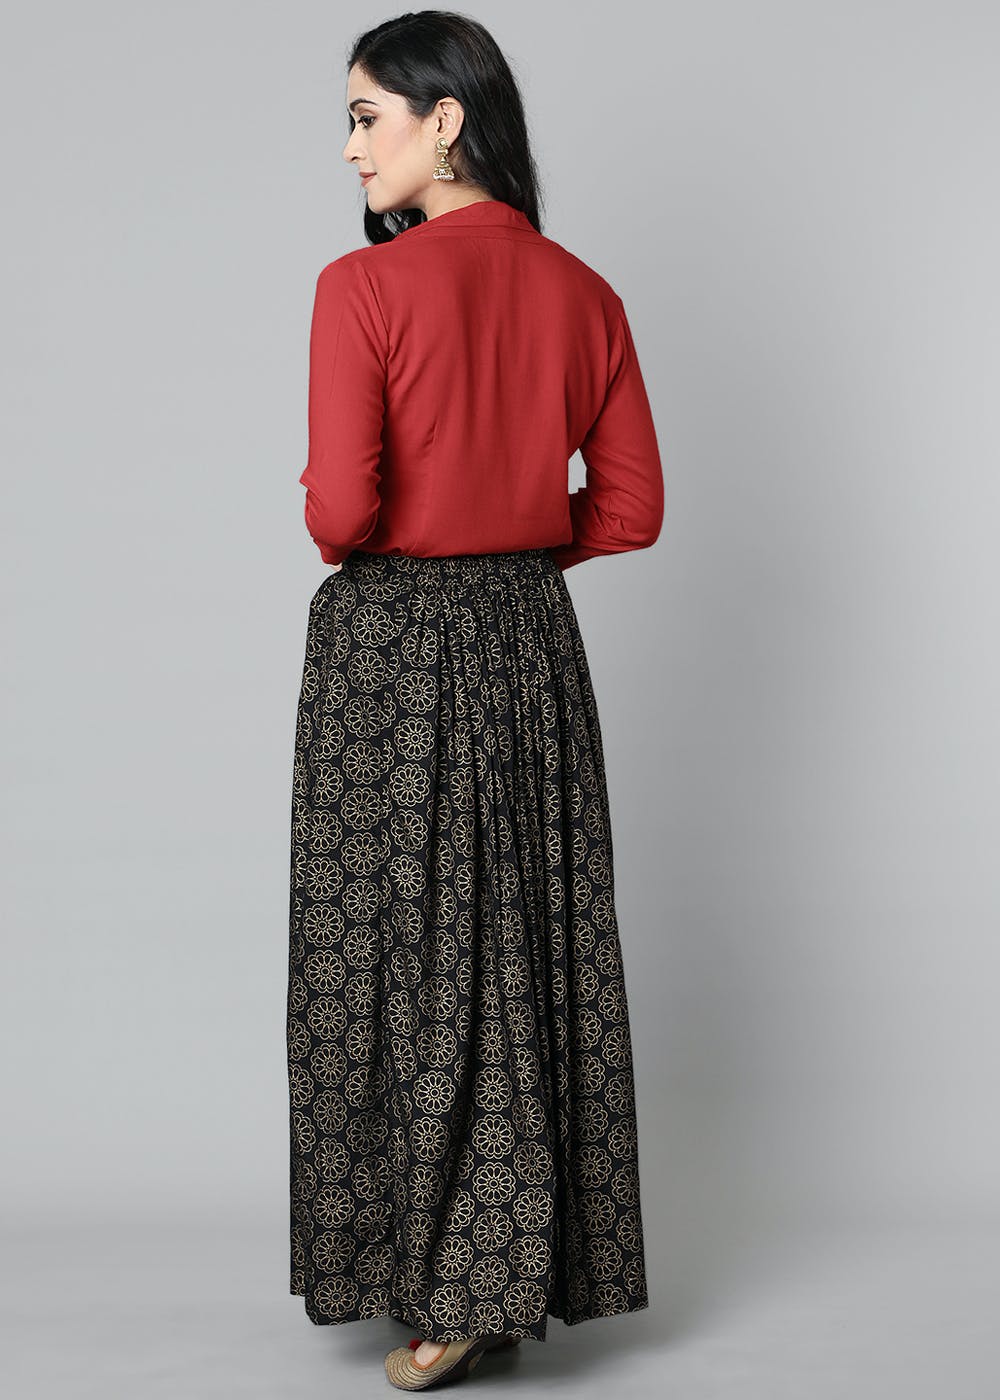 Share 170+ full length skirts online super hot